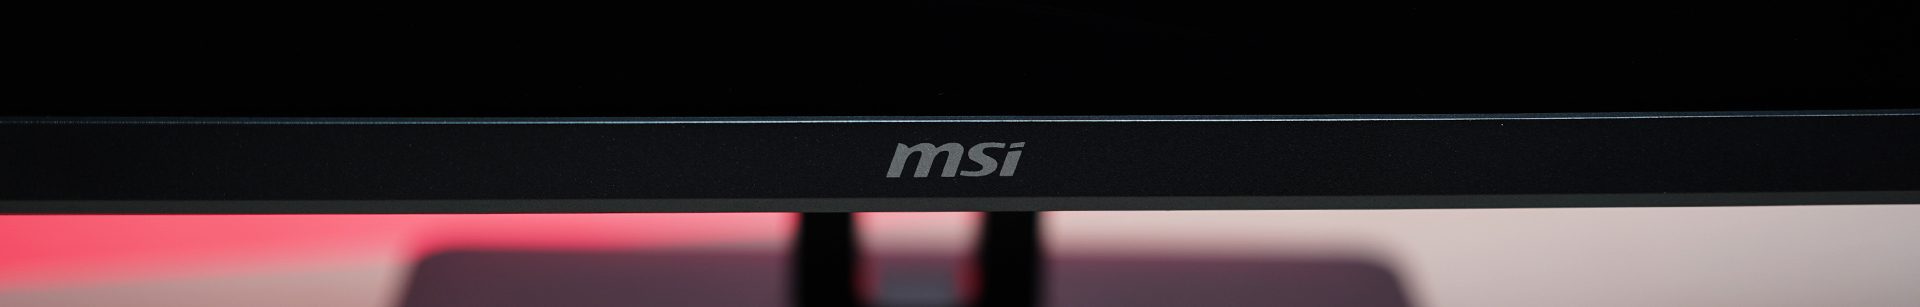 MSI MP271QP - Foto von MSI Logo auf dem Monitorrahmen